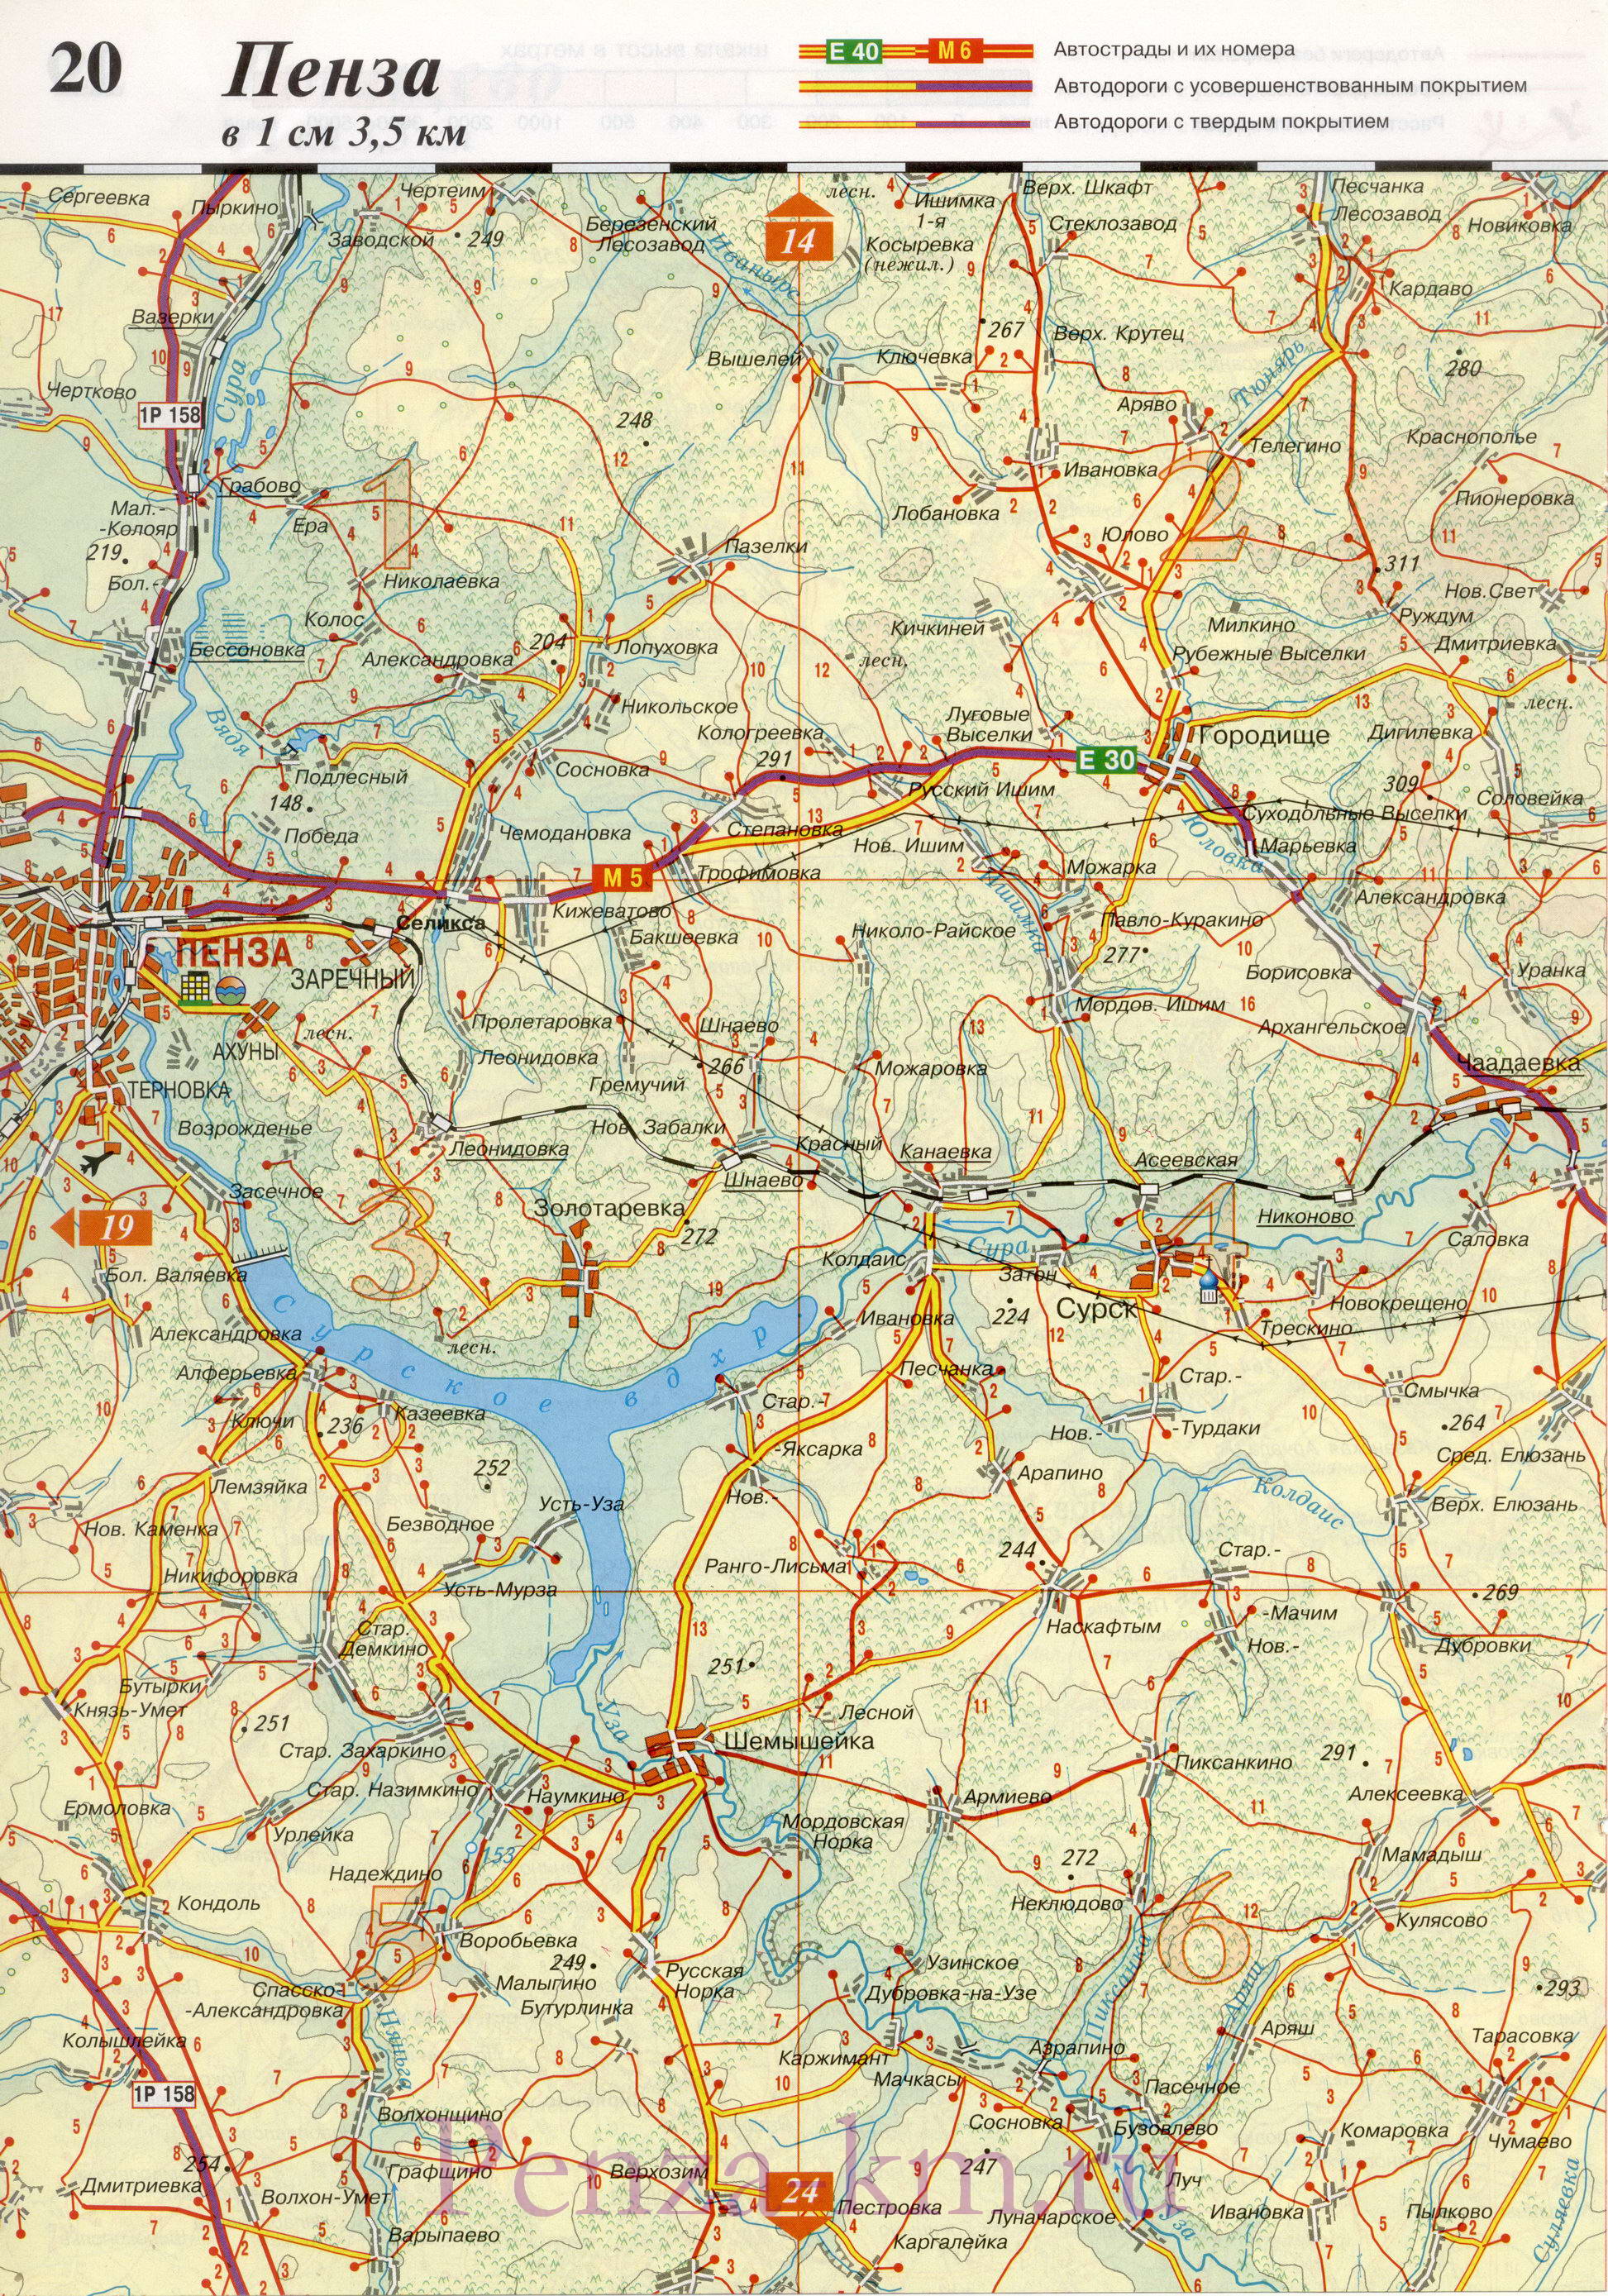  Пензенская область карта дорог. Подробная карта автодорог Пензенской области масштаба 1см:3,5км, D1 - 